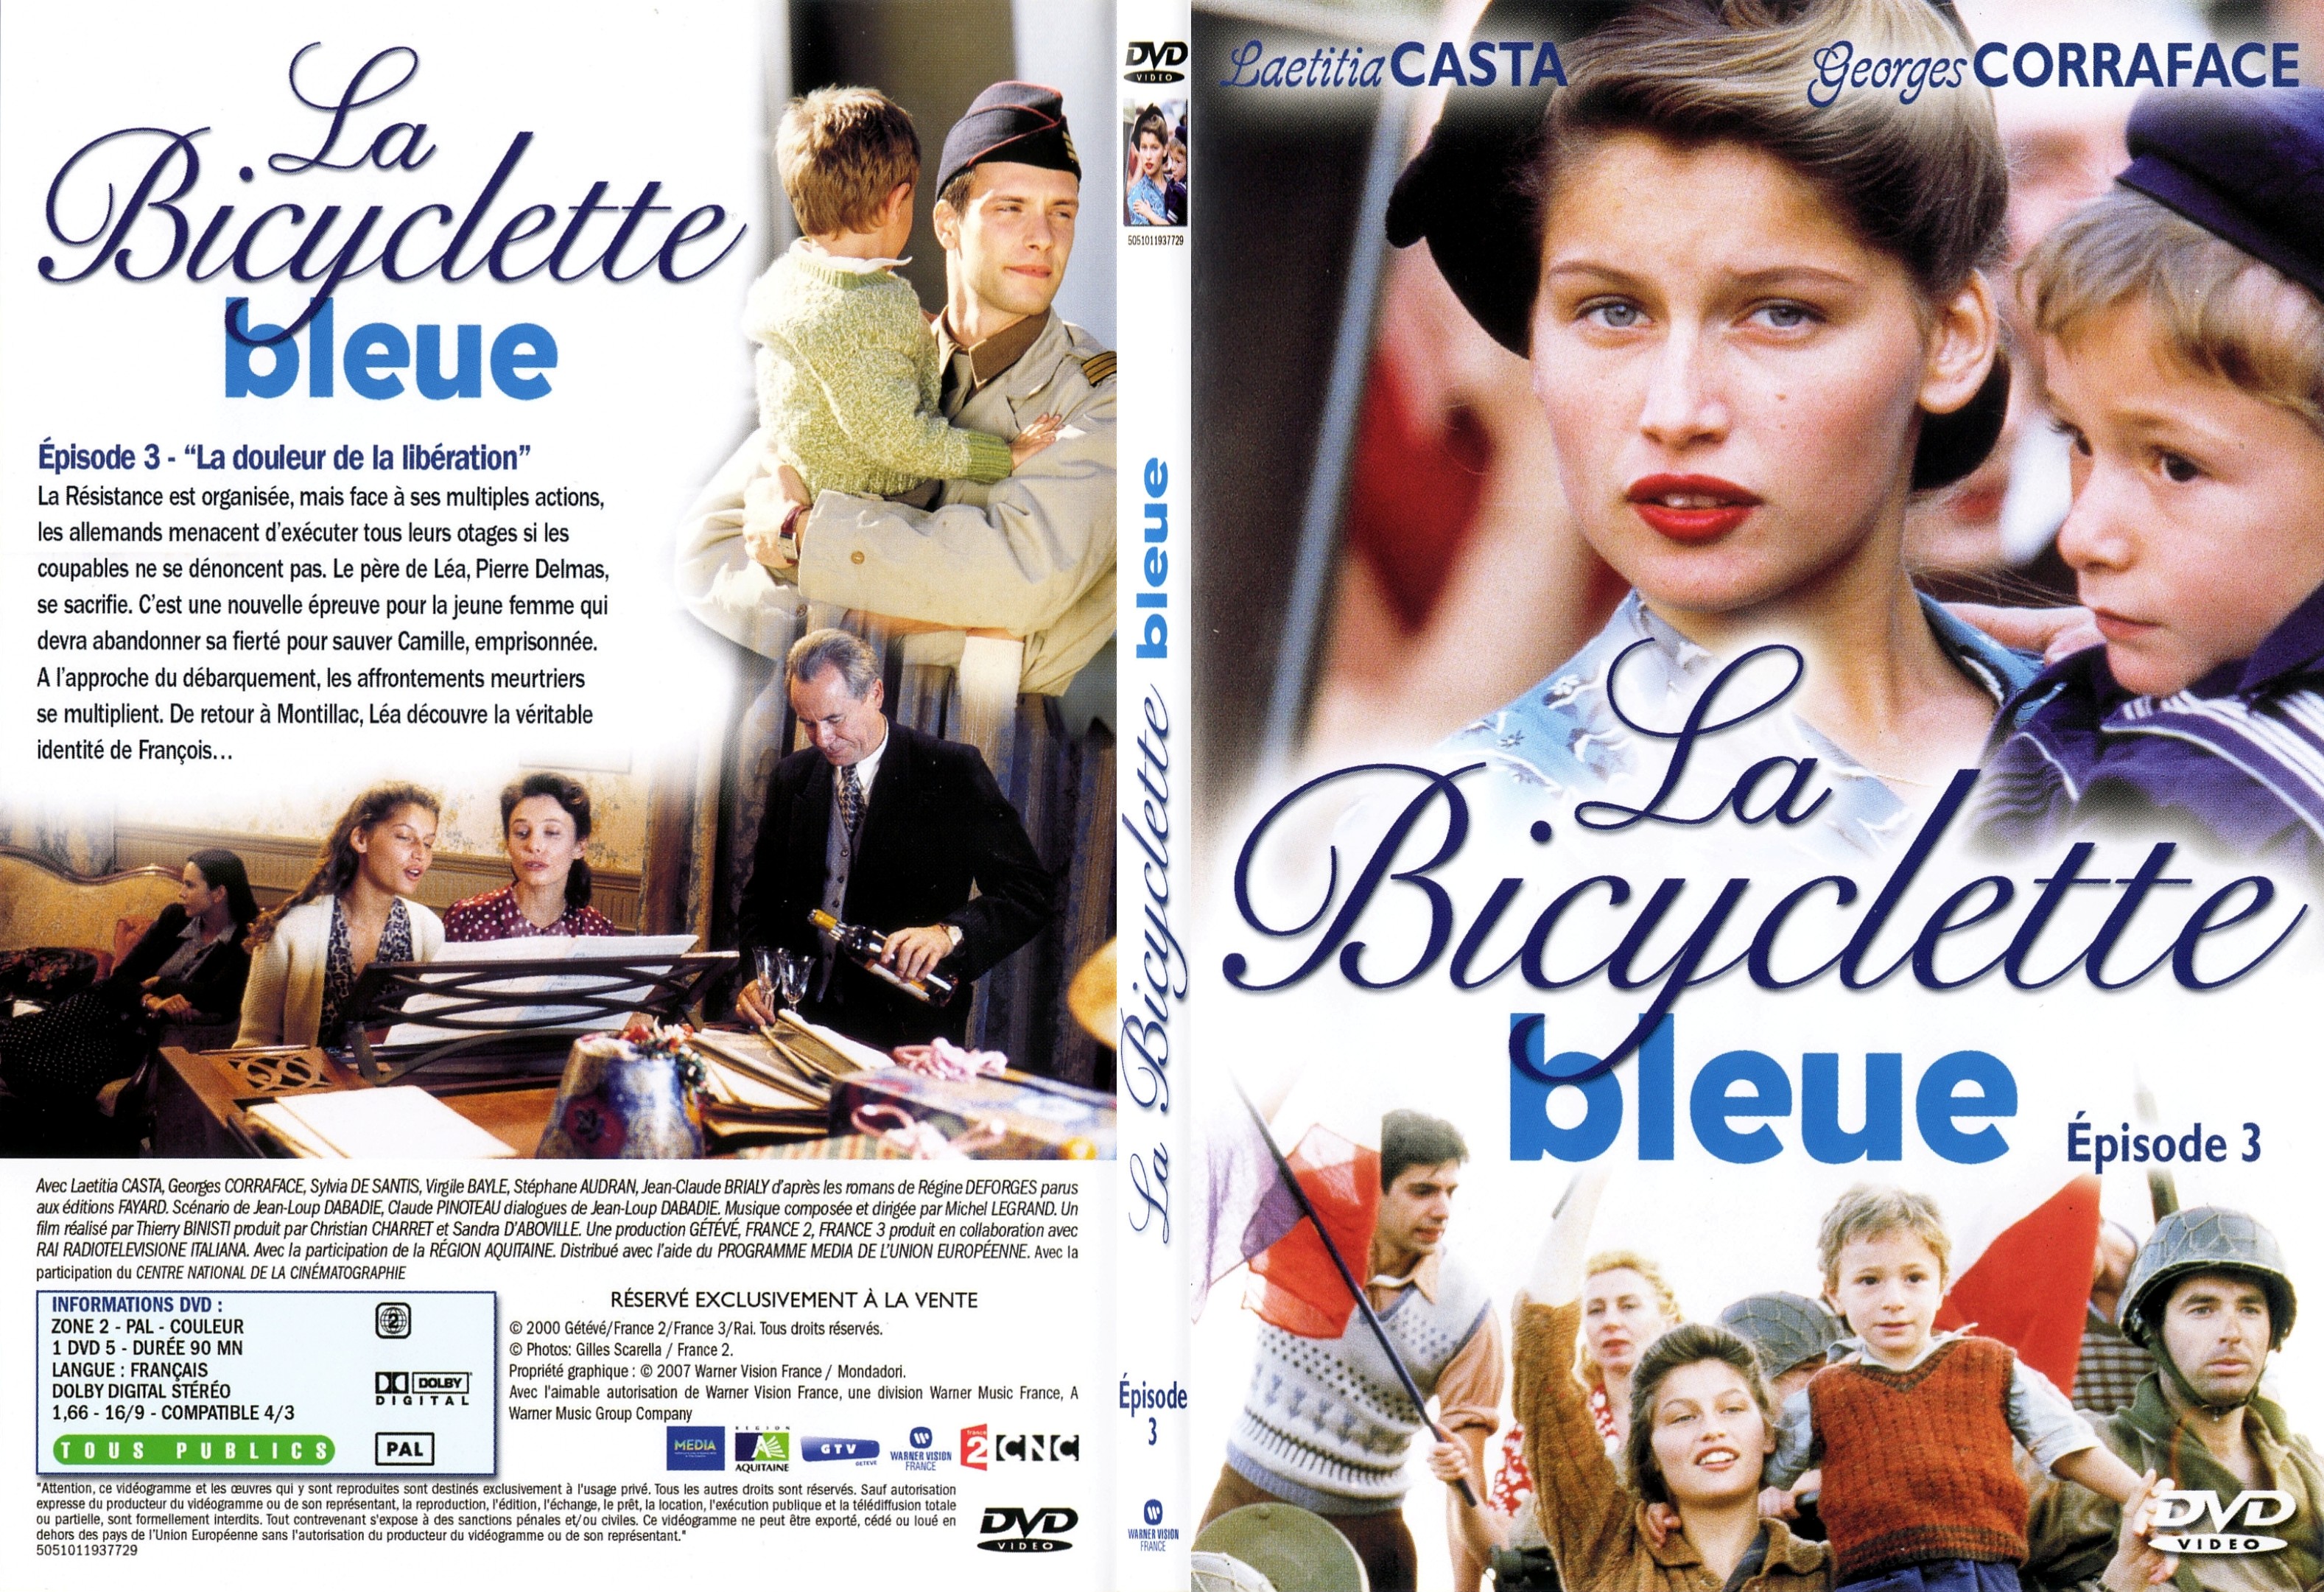 Jaquette DVD La bicyclette bleue Episode 3 - SLIM